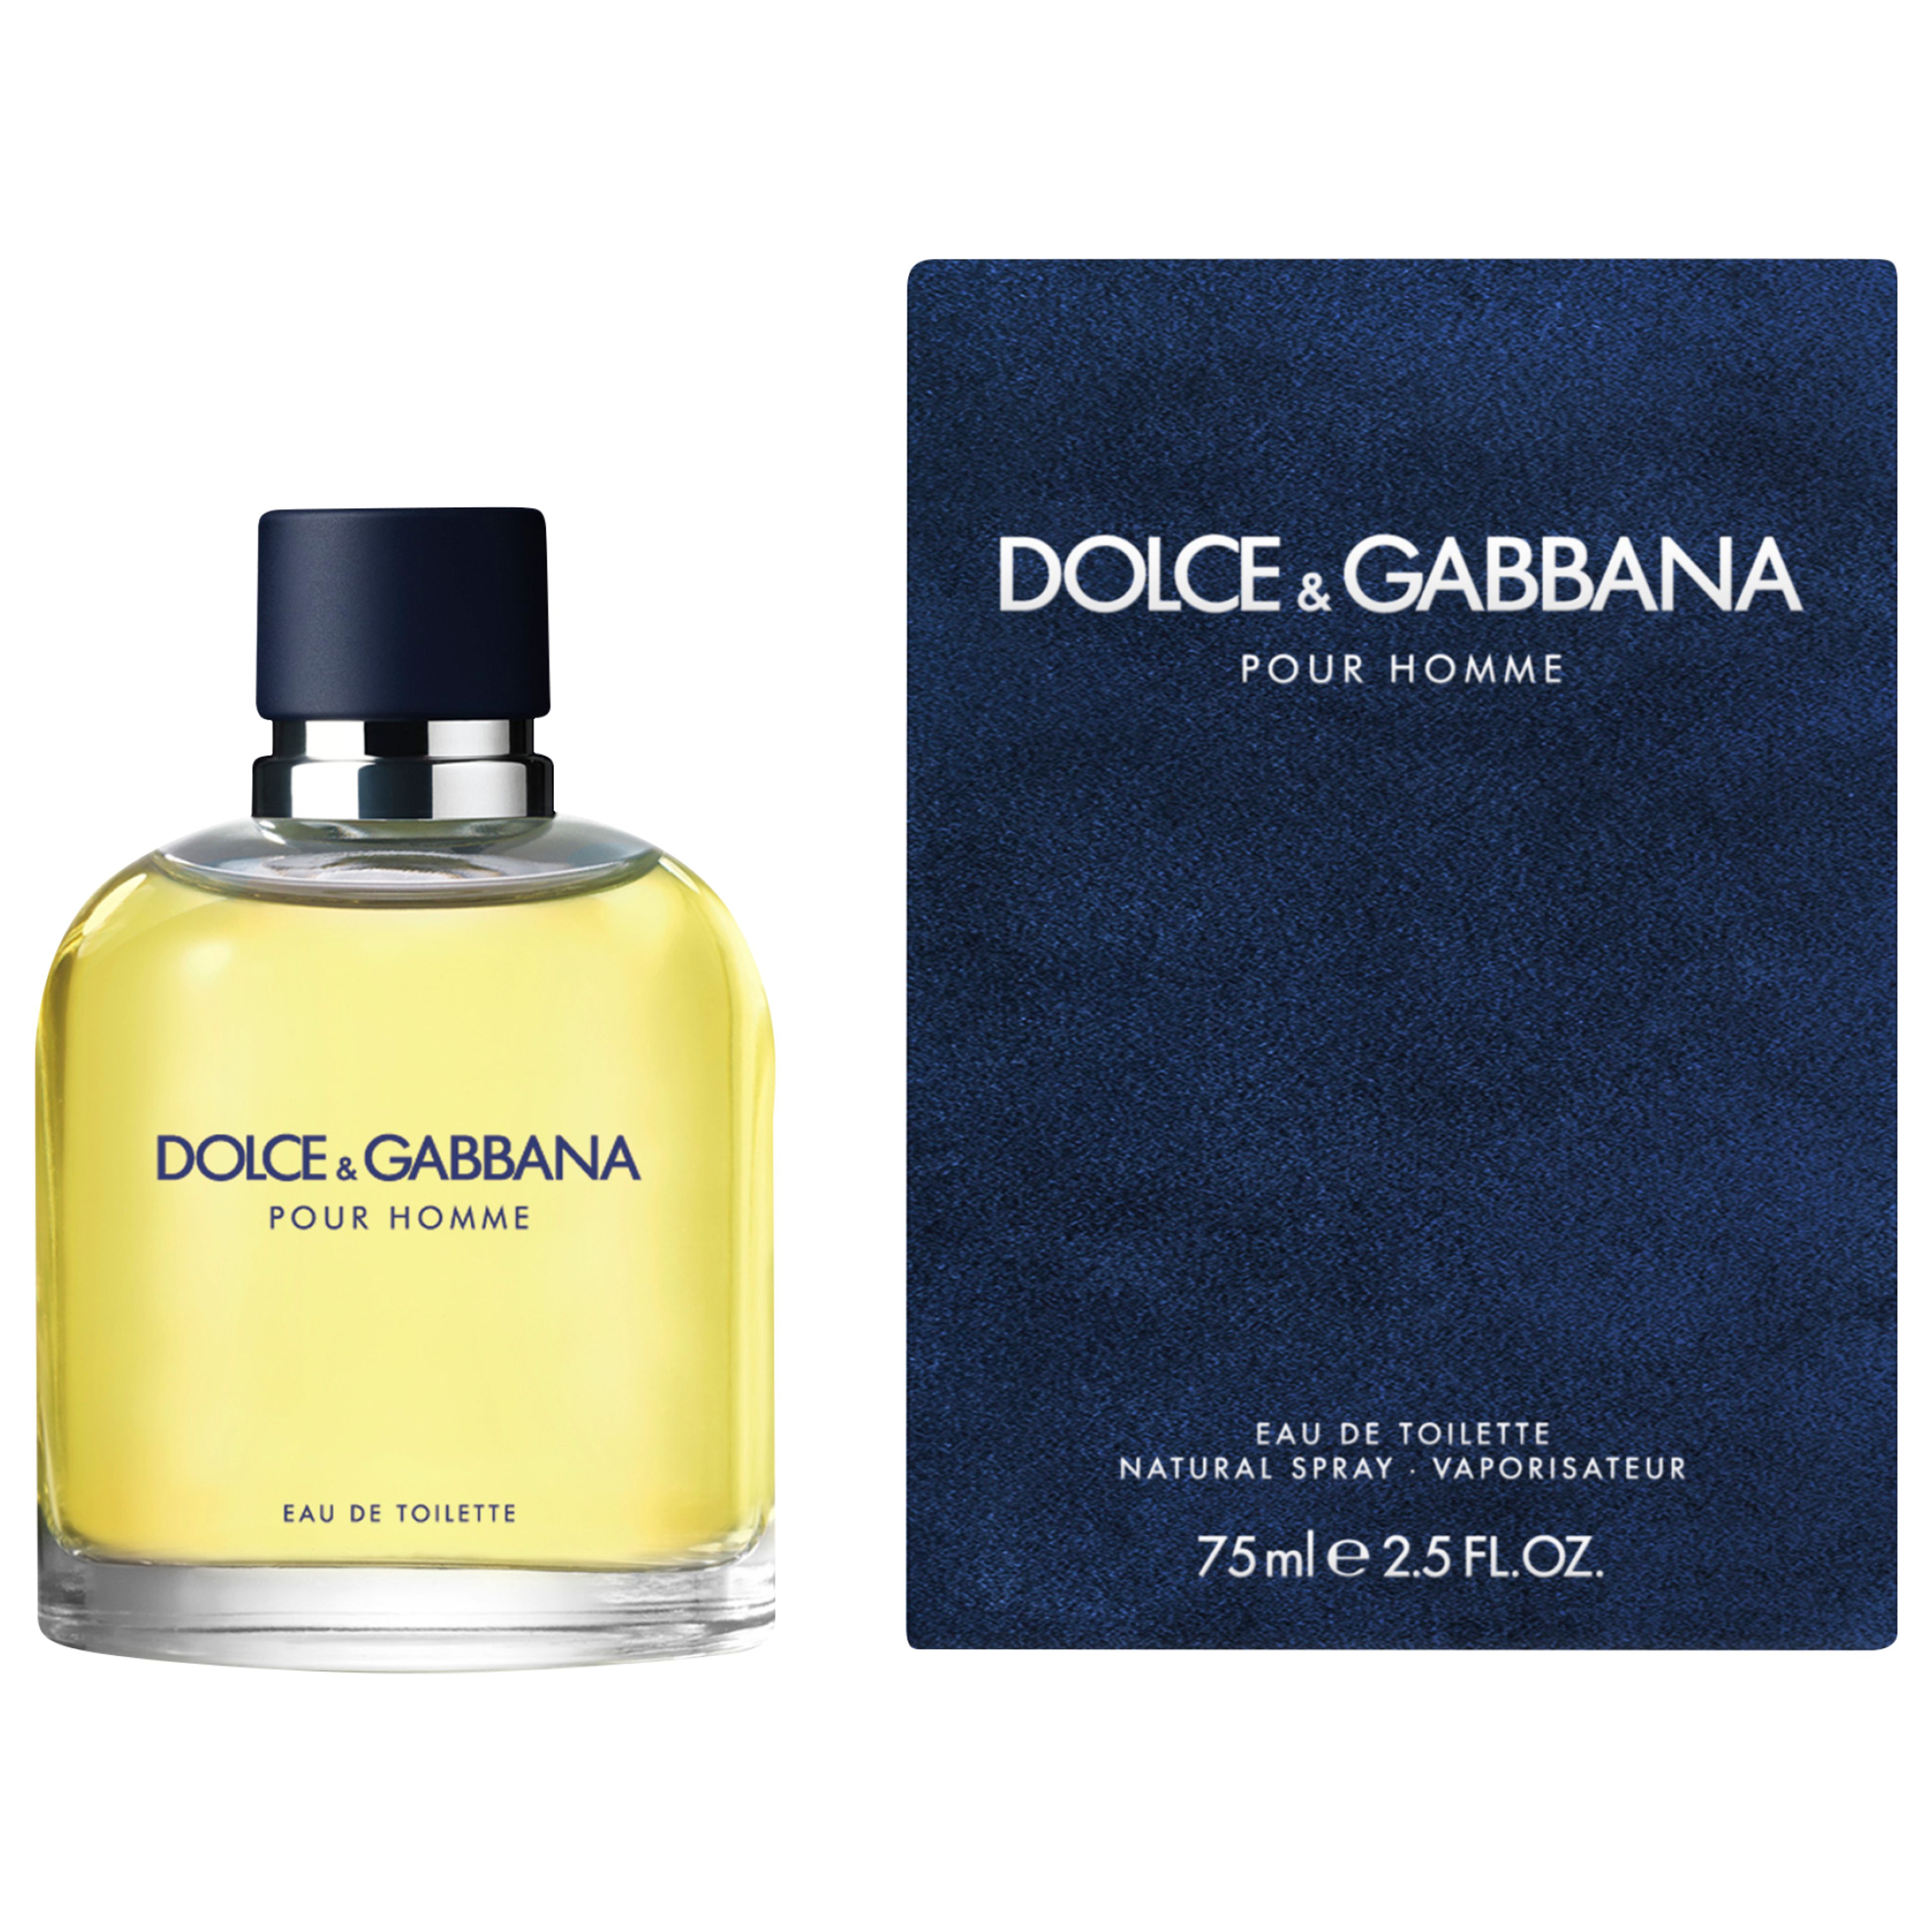 Dolce & Gabbana Pour Homme Eau De Toilette 2